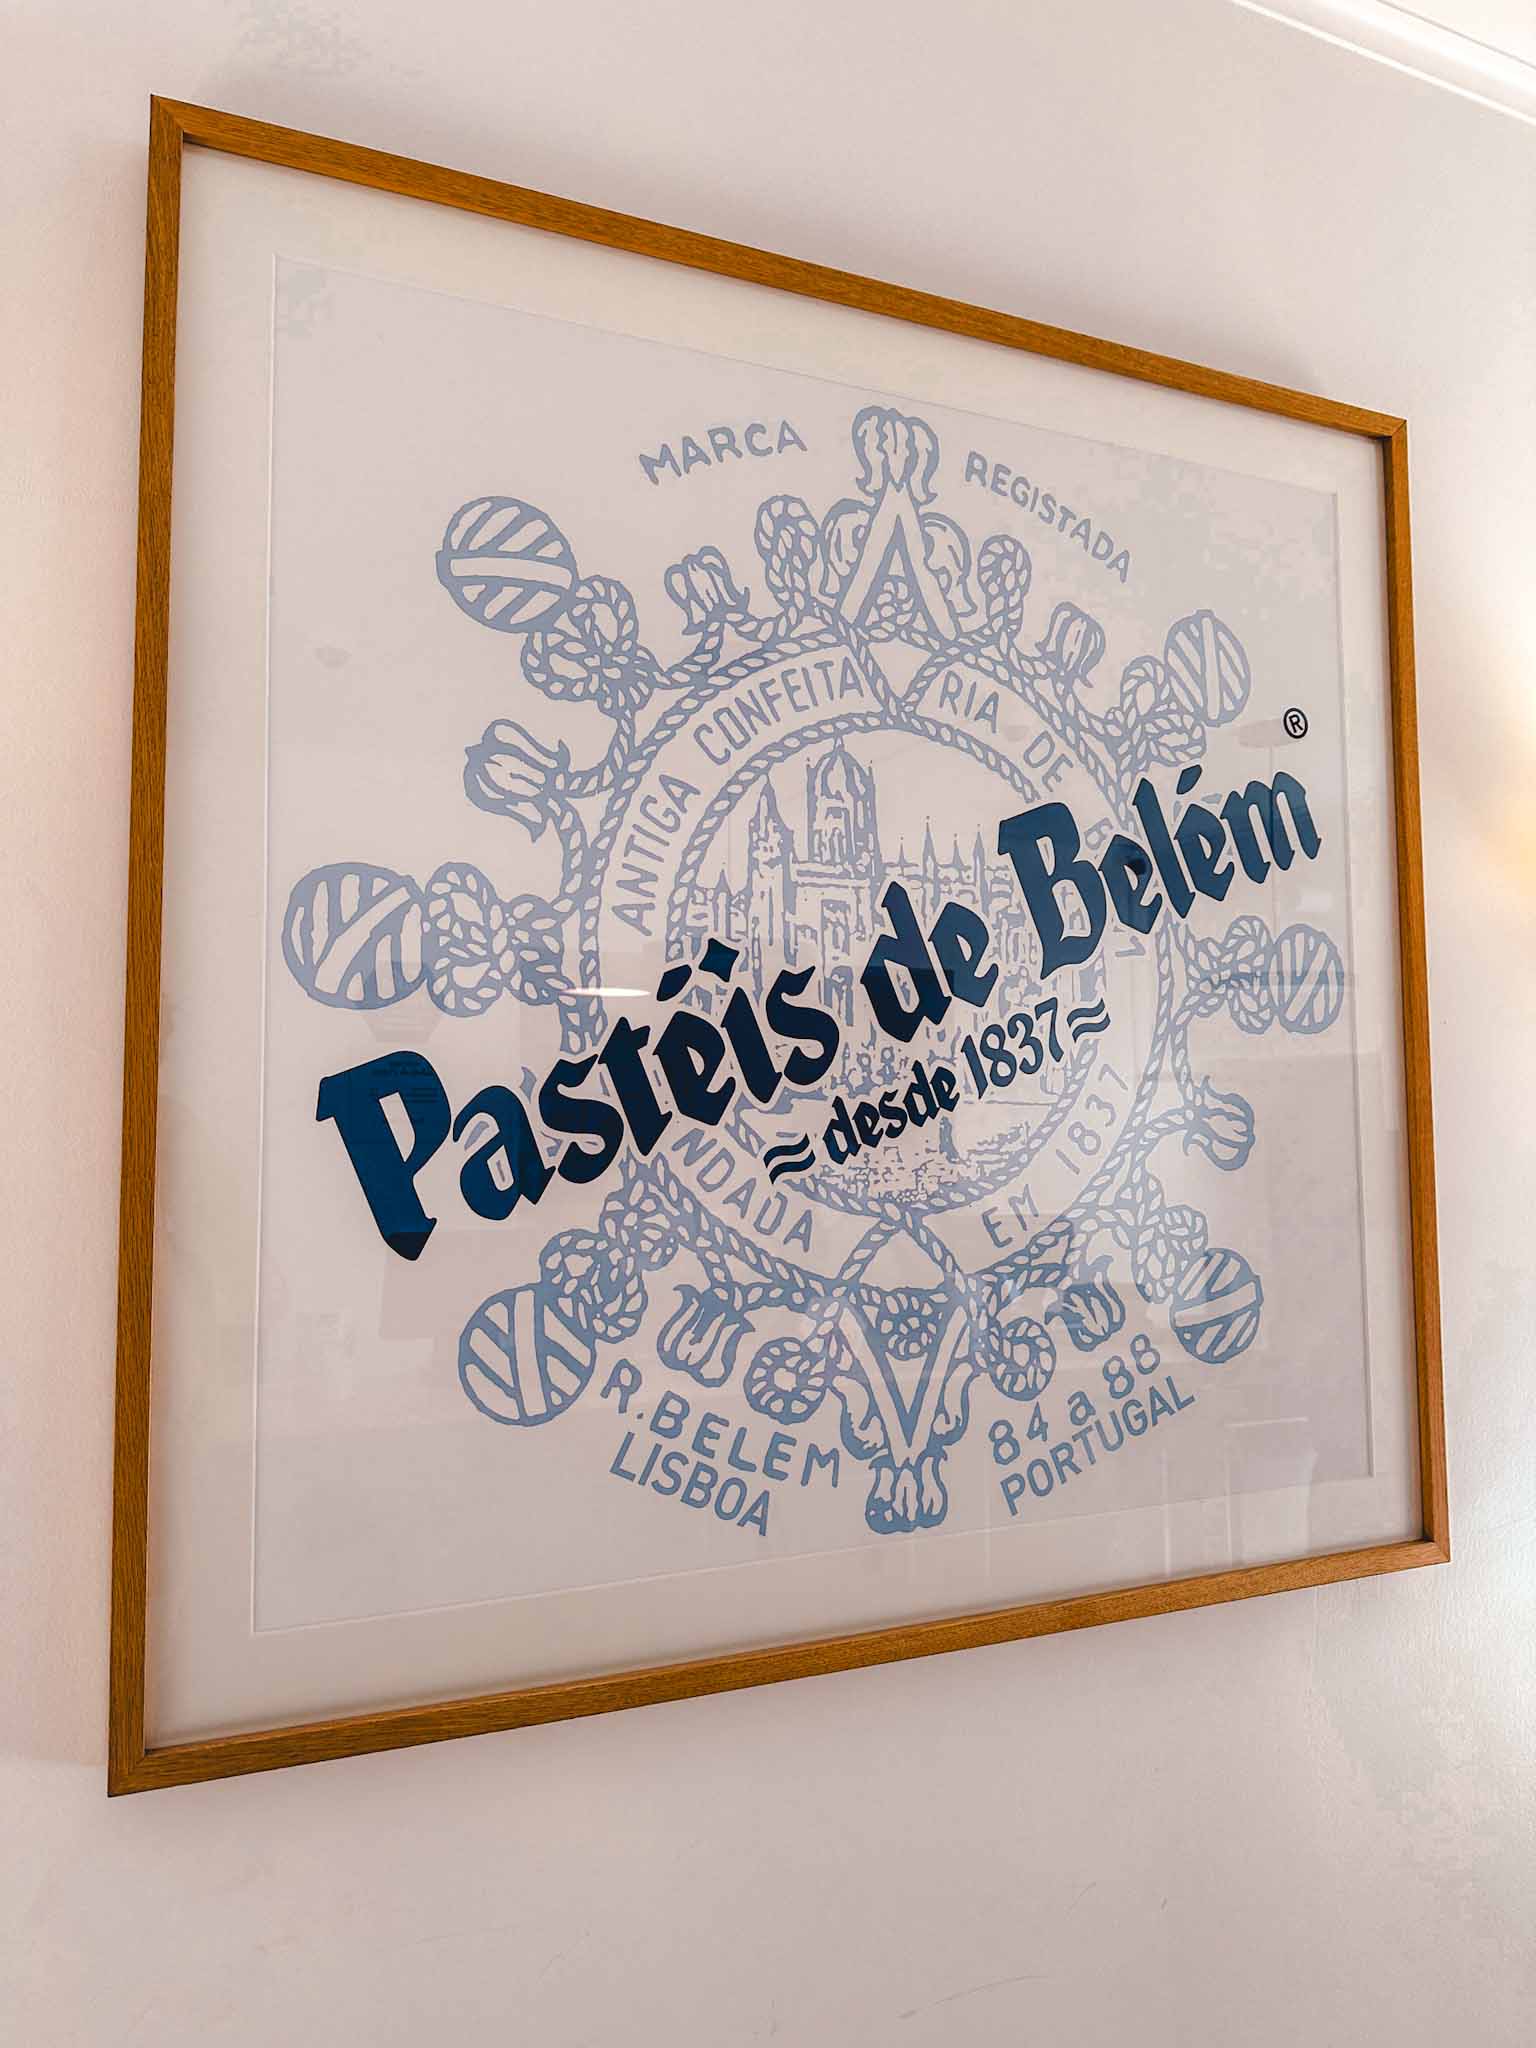 Best pastel de nata in Lisbon - Pastéis de Belém